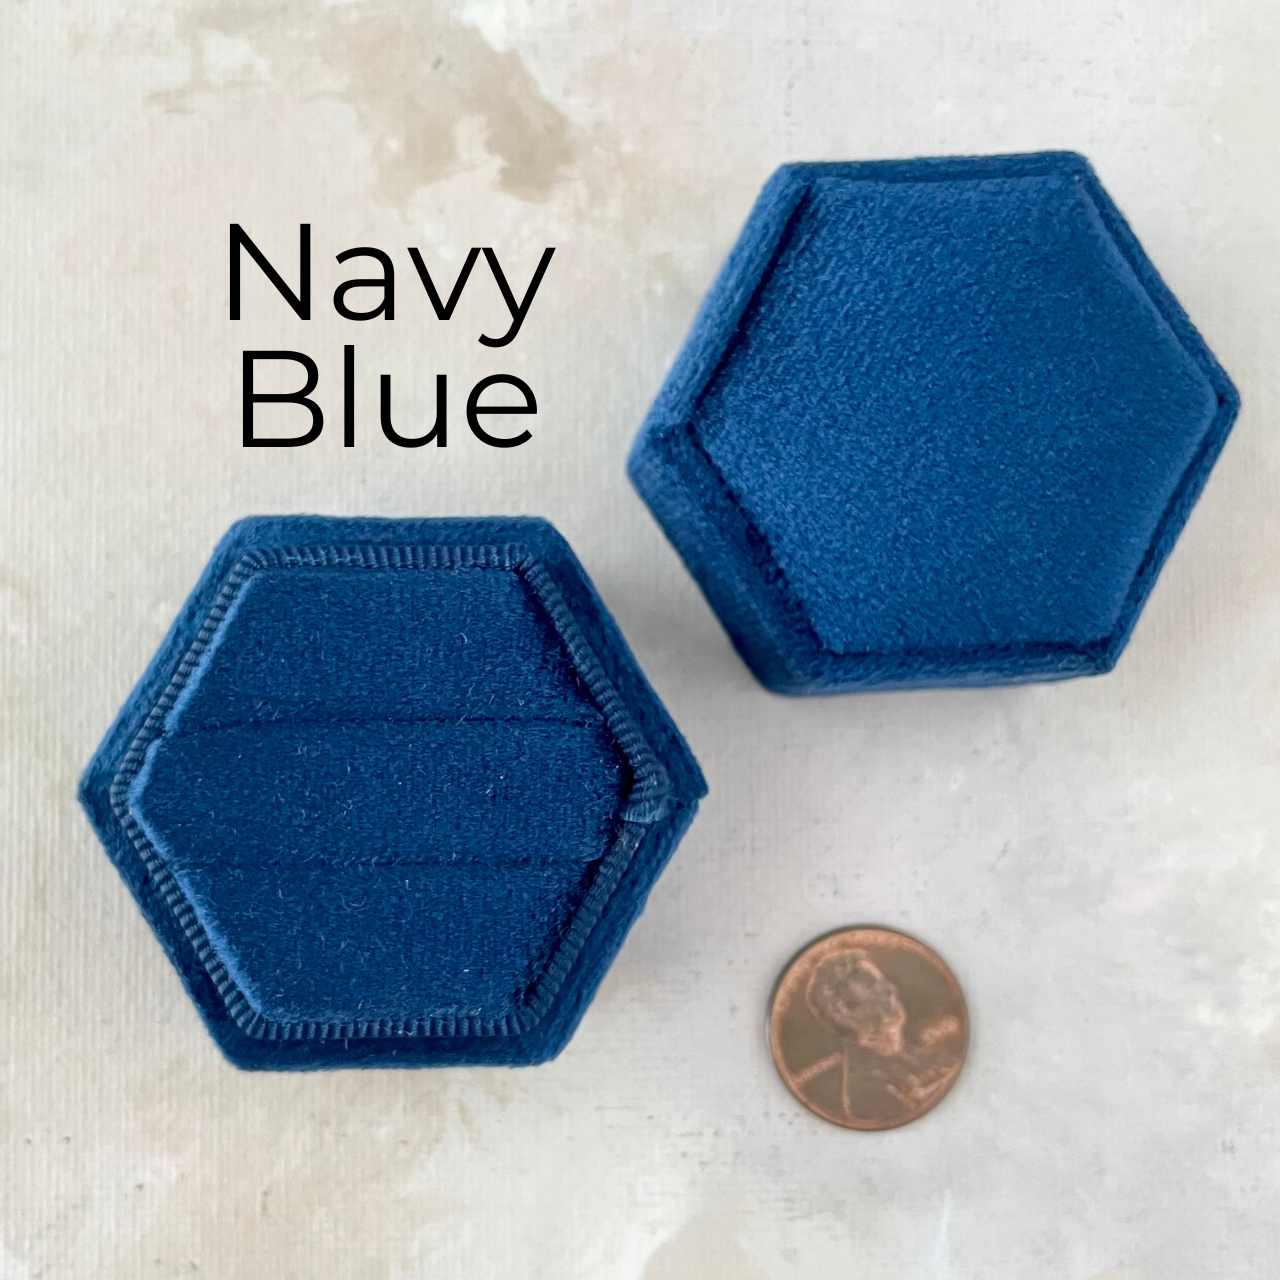 Navy Ring Box